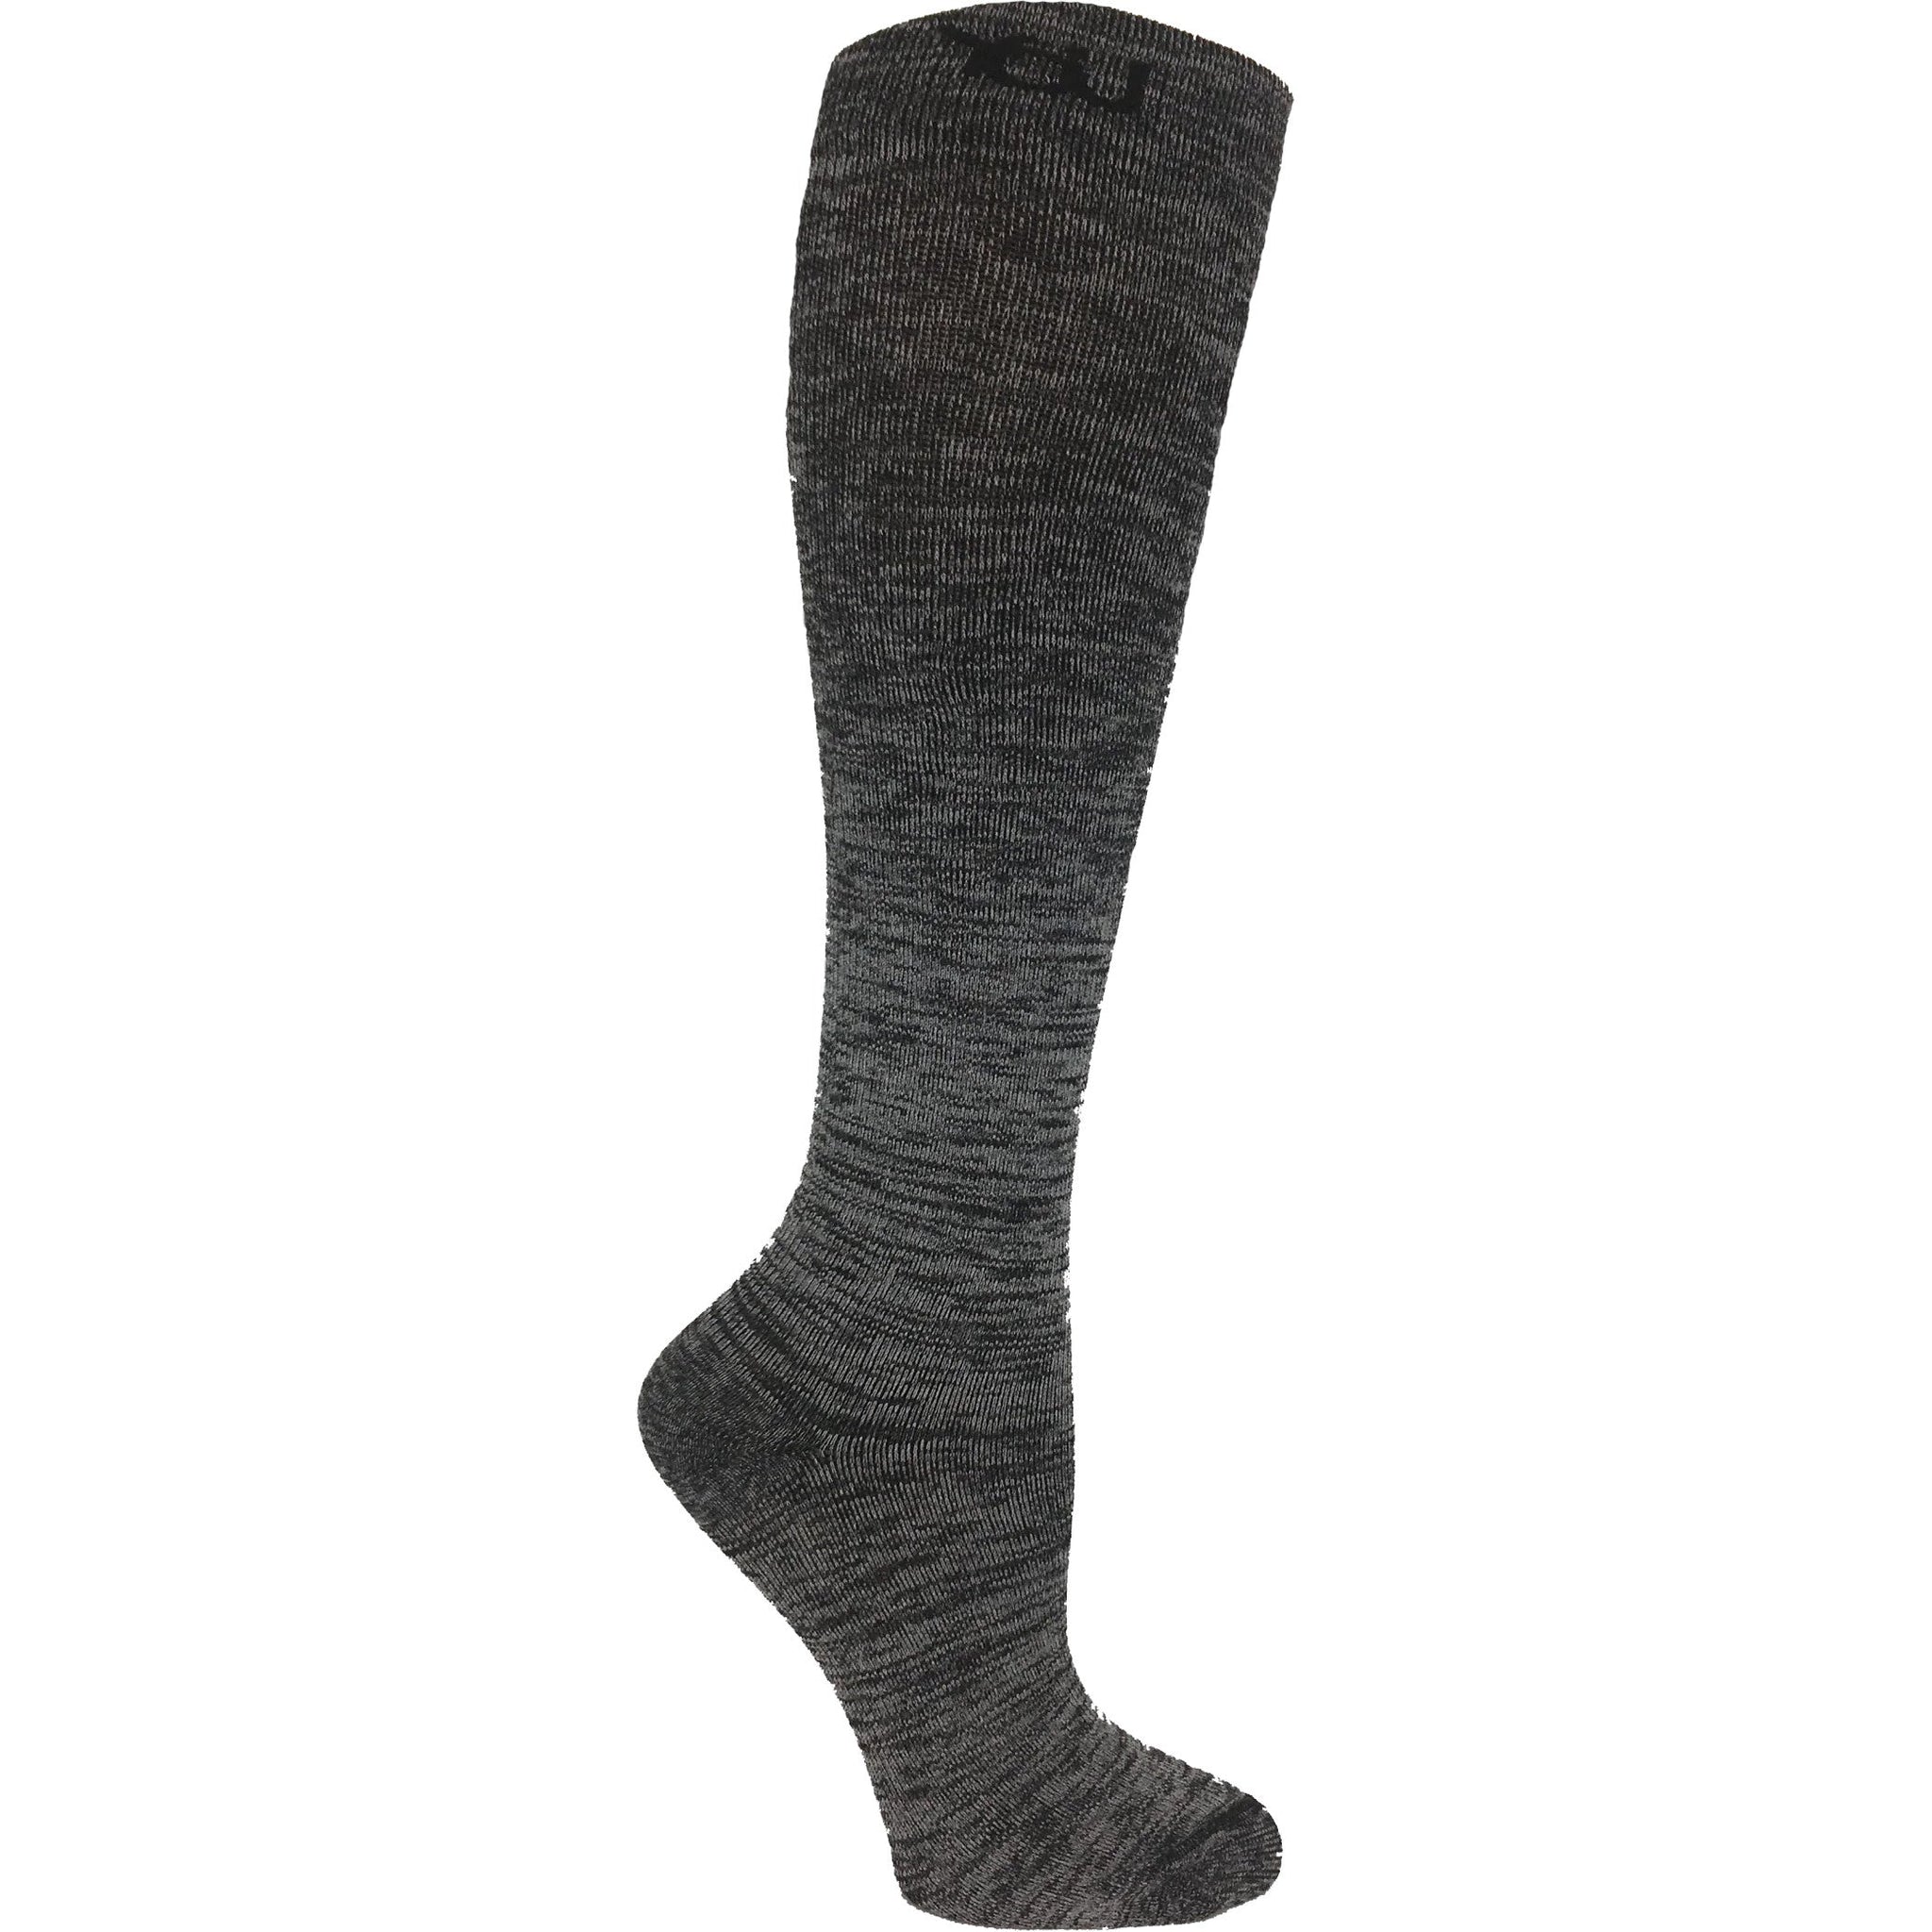 https://myicewrap.com/cdn/shop/products/medical-grade-compression-socks-gray-marl-cushion2_2048x.jpg?v=1662480937